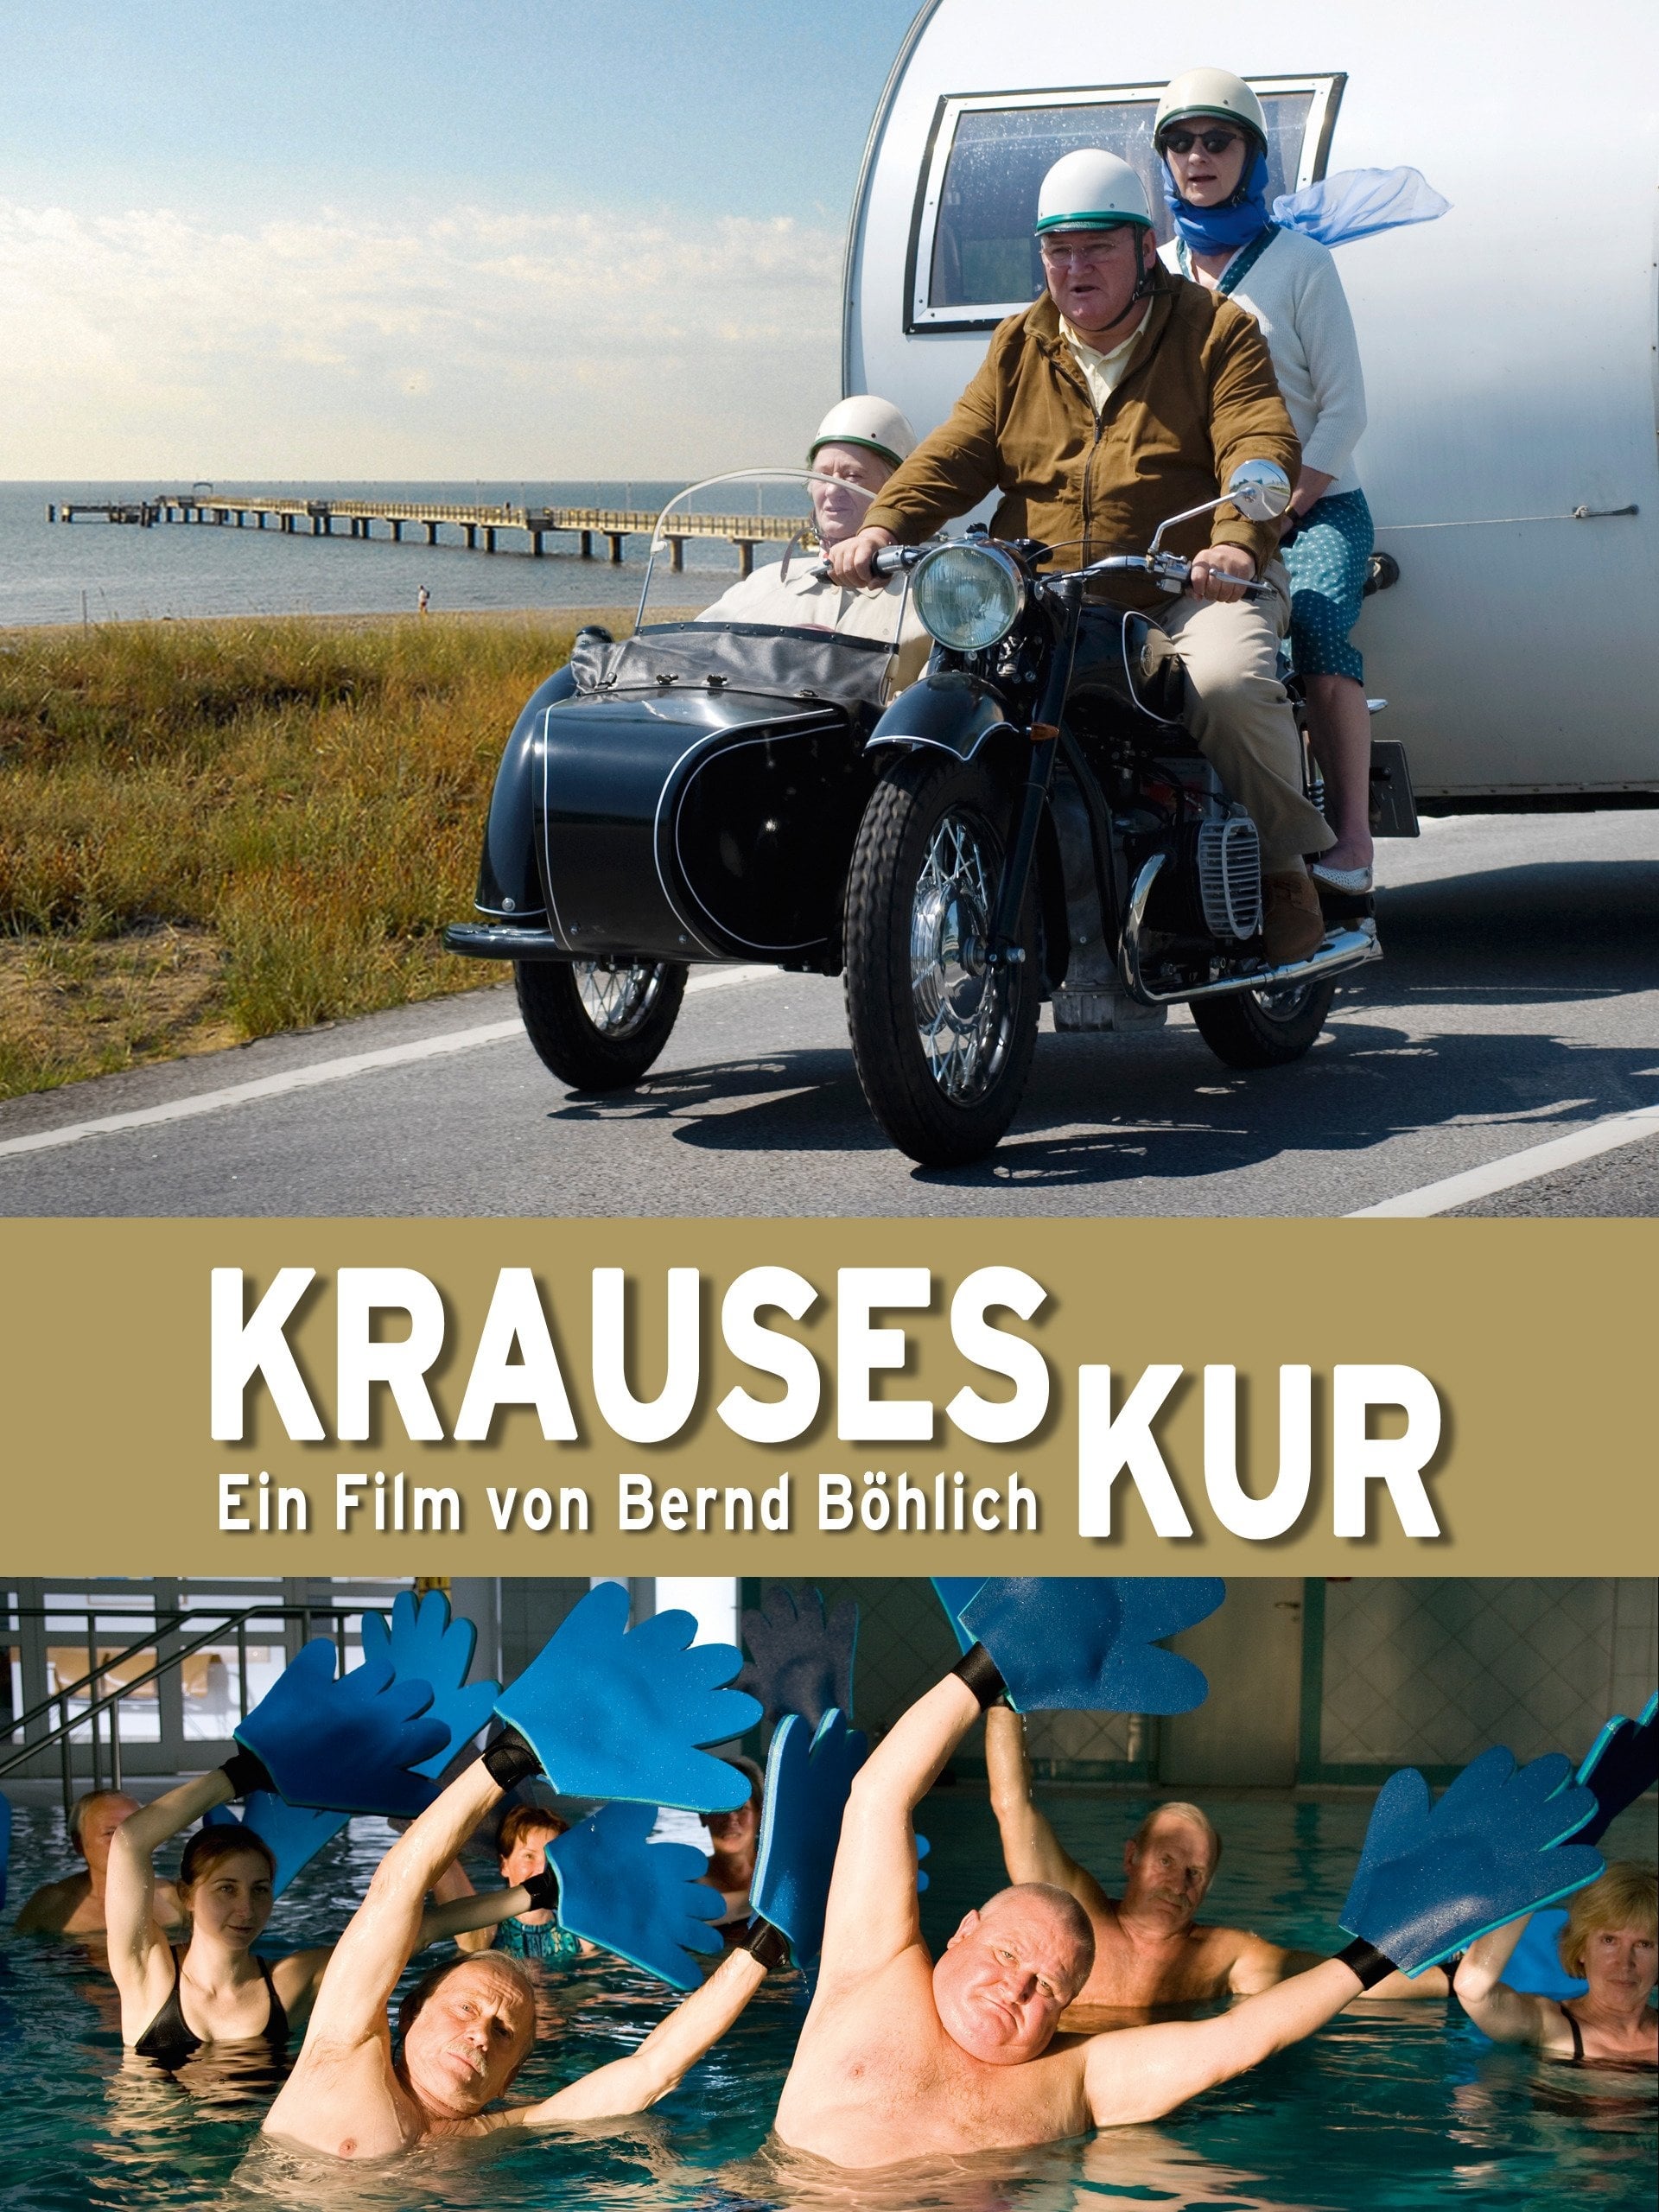 Krauses Kur (2009)